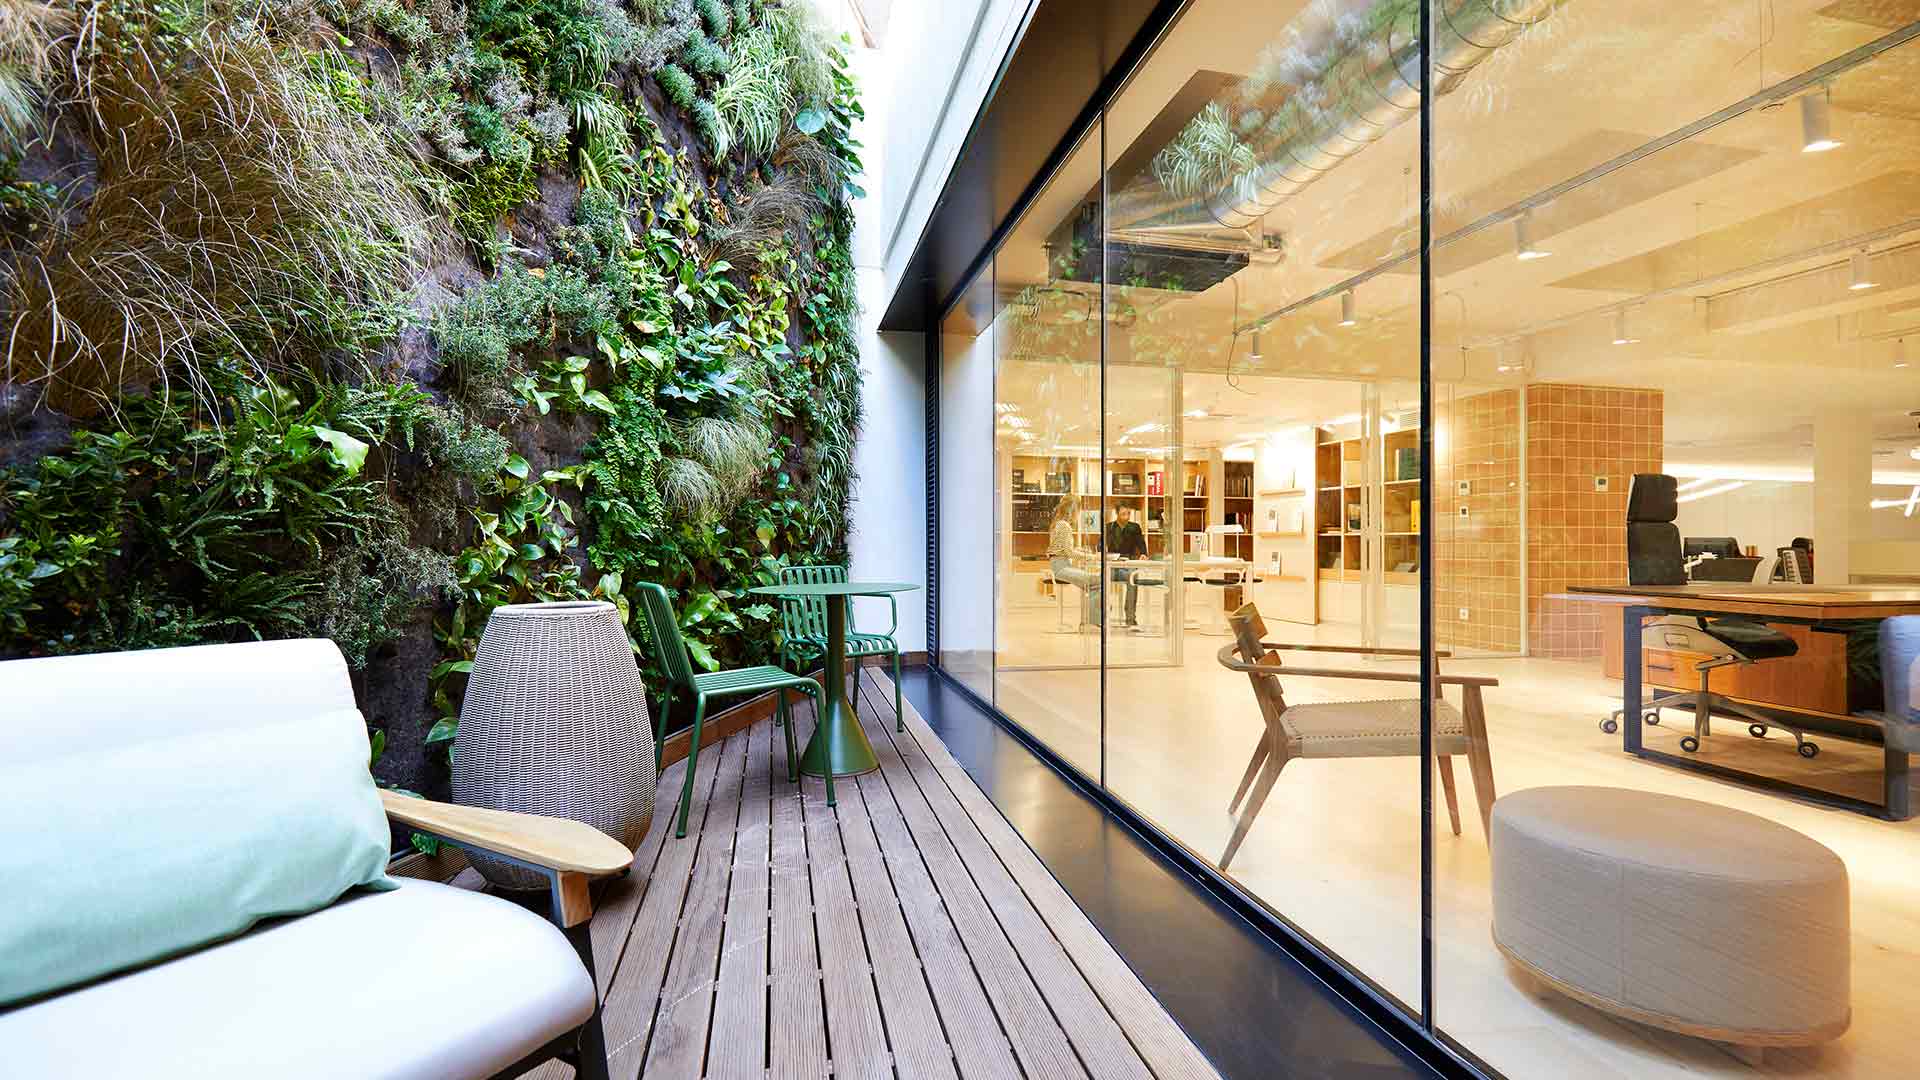 Grup Idea ha realizado el diseño y project management y construcción a través de Abessis dde las nuevas oficinas y showroom de Bernadí.